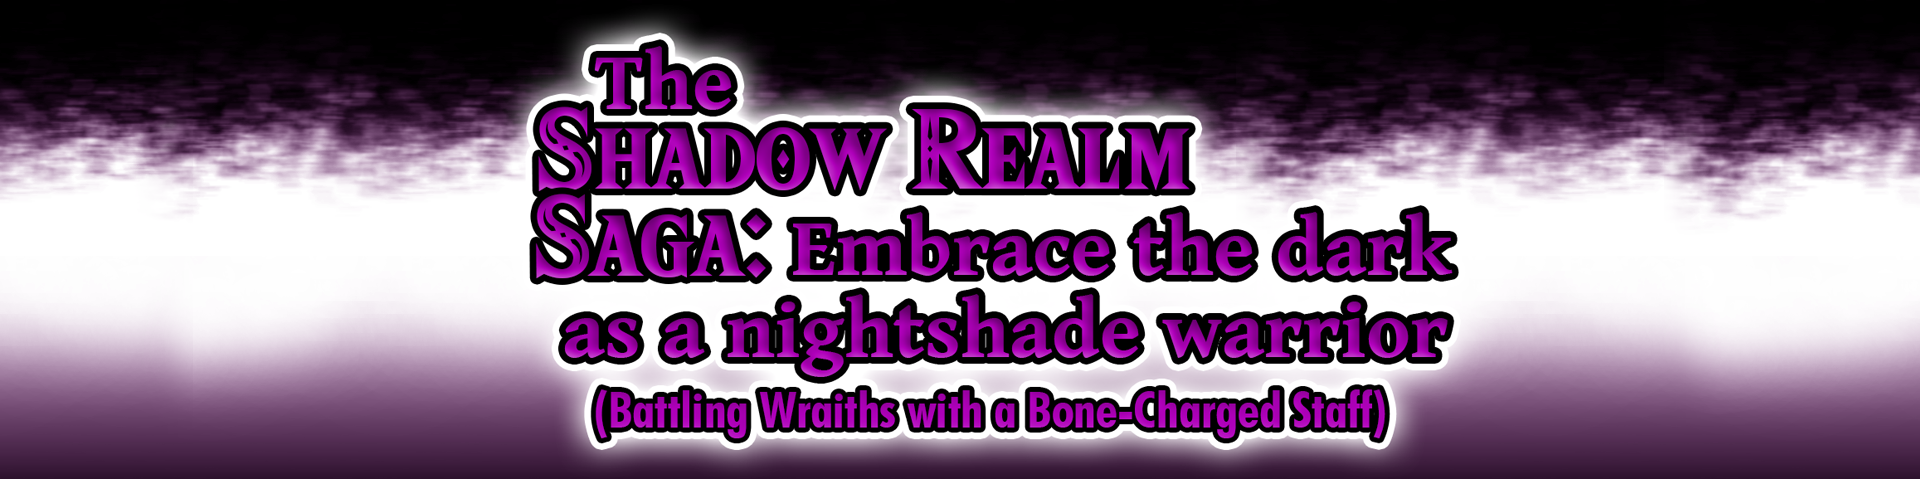 The Shadow Realm Saga